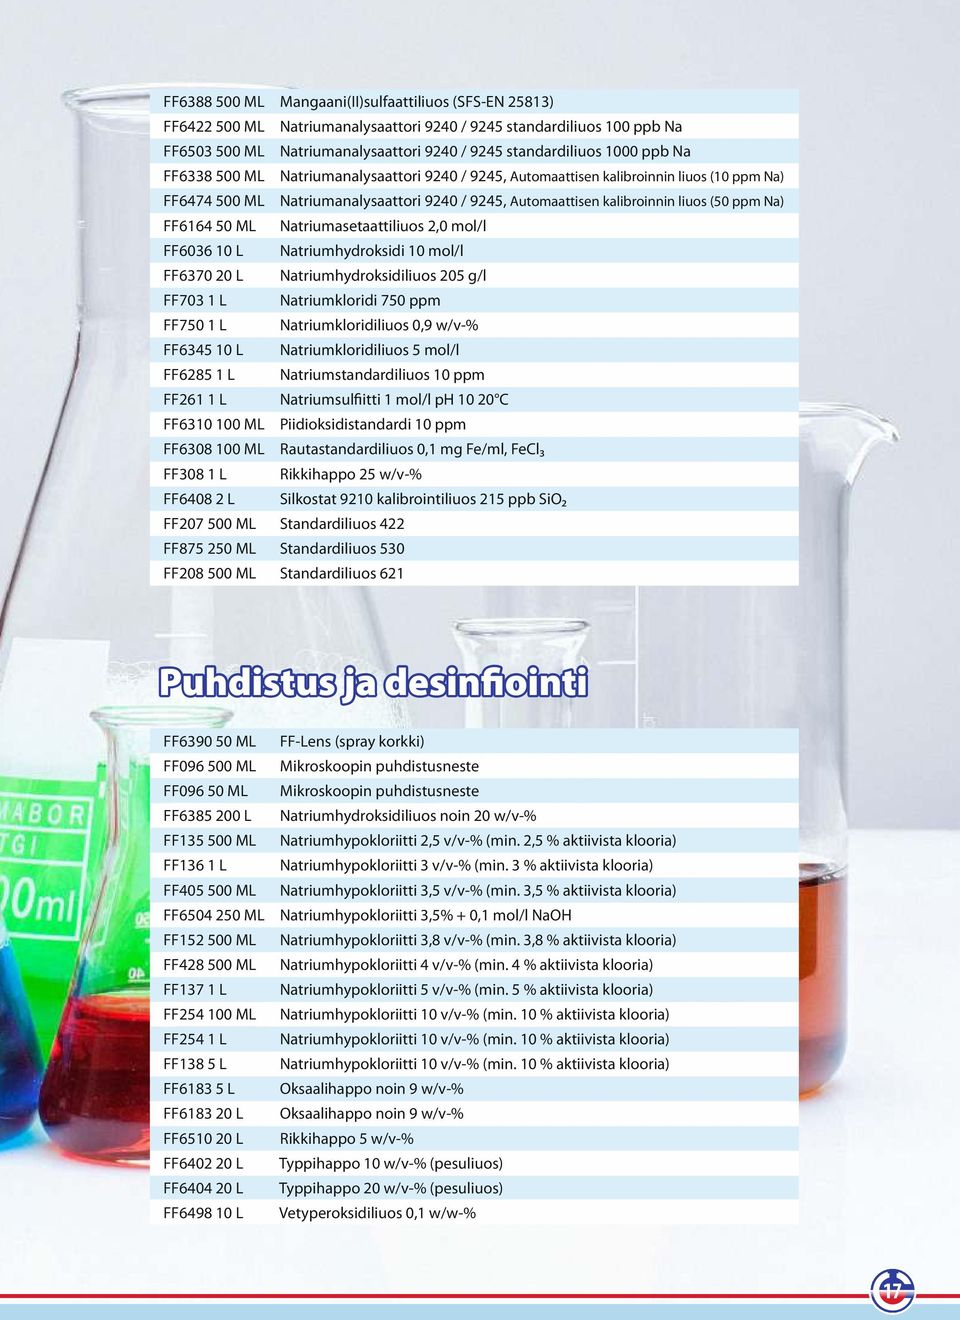 ML Natriumasetaattiliuos 2,0 mol/l FF6036 10 L Natriumhydroksidi 10 mol/l FF6370 20 L Natriumhydroksidiliuos 205 g/l FF703 1 L Natriumkloridi 750 ppm FF750 1 L Natriumkloridiliuos 0,9 w/v-% FF6345 10